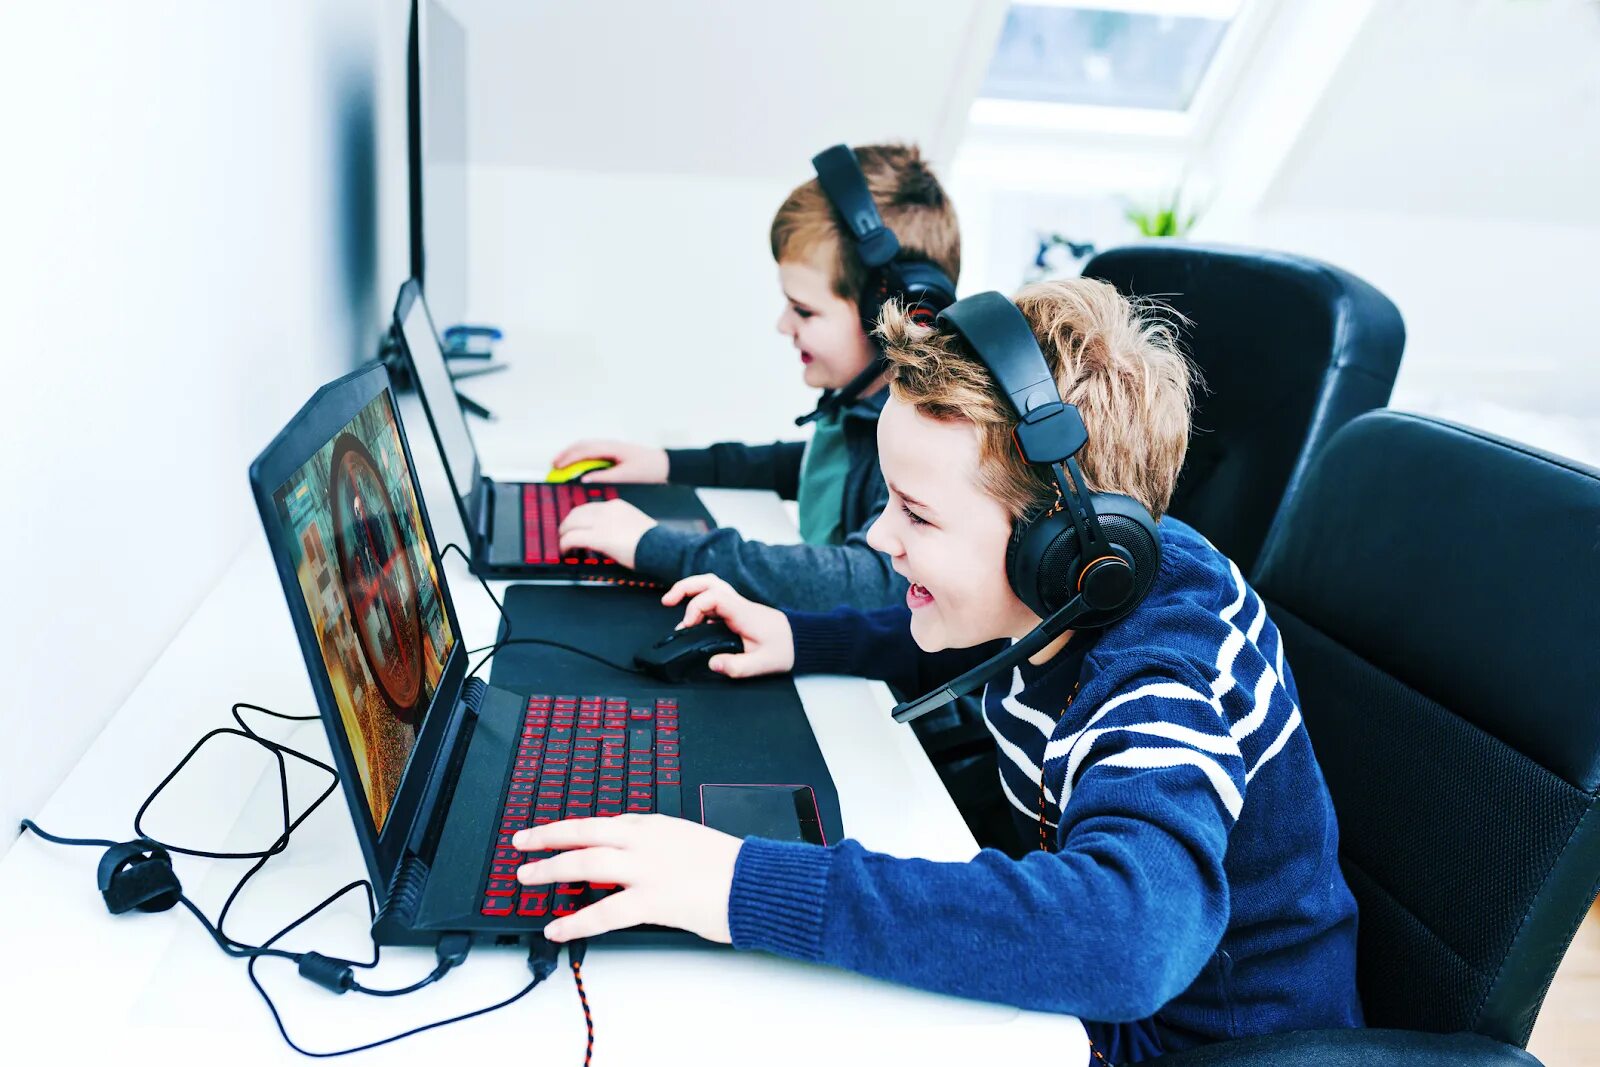 Играющий в компьютерные игры. Подросток играющий в компьютер. Игровая зависимость. Зависимость от компьютерных игр. Дети играющие в компьютер.